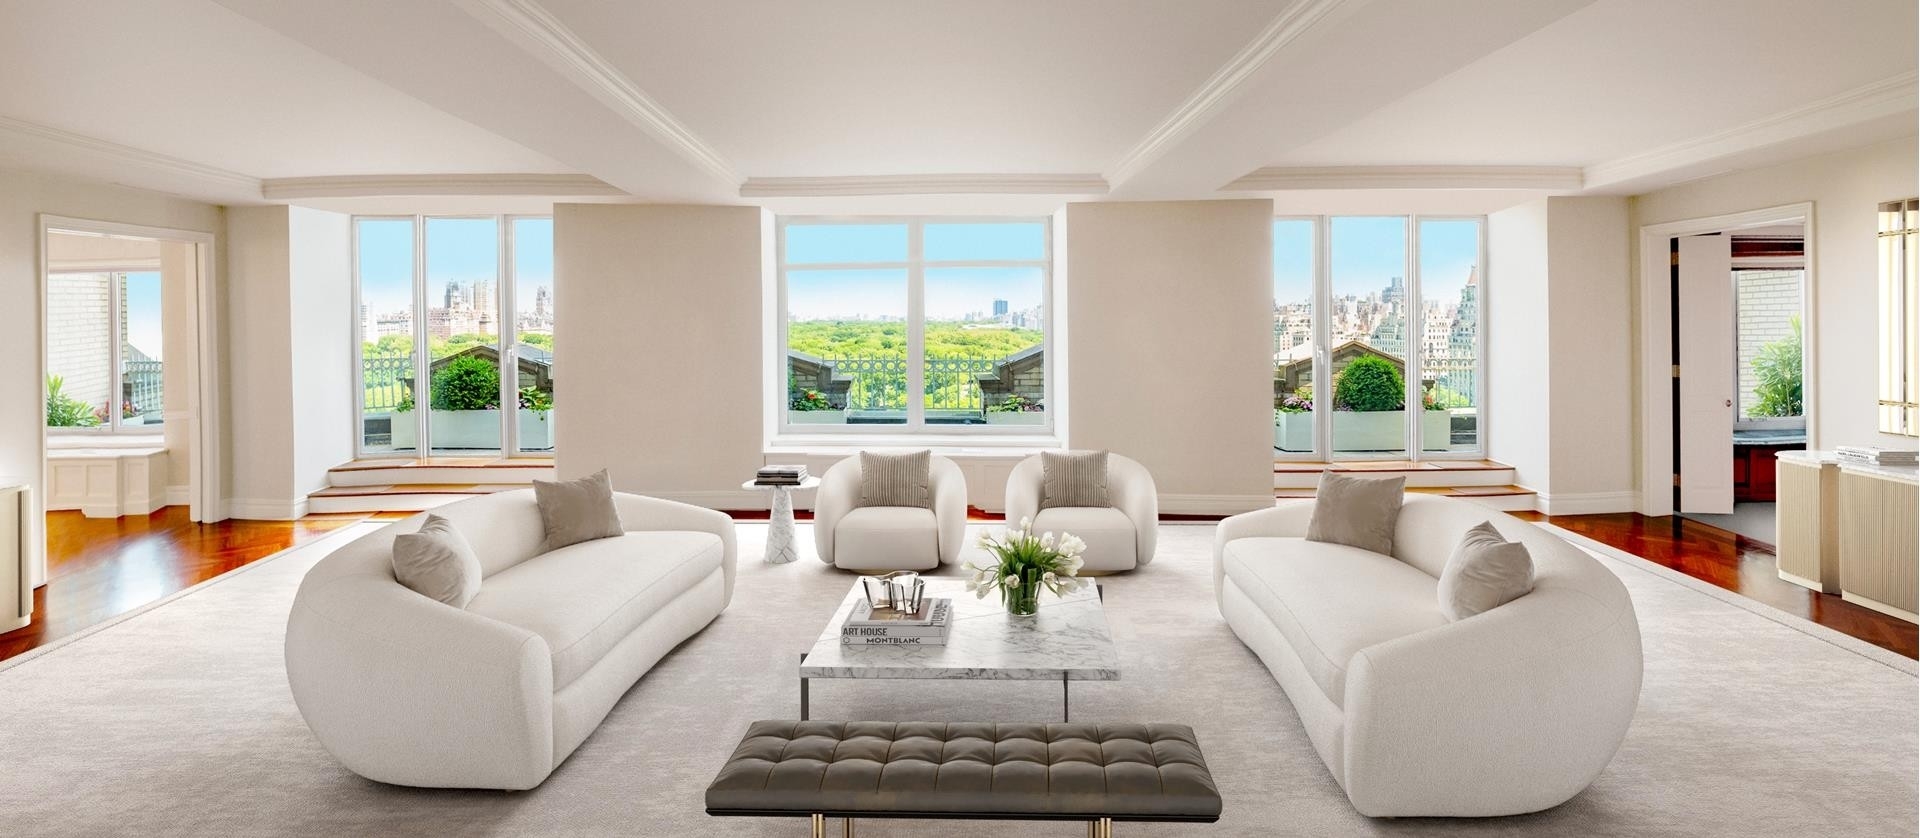 Property at Residences At Ritz-Carlton, 50 CENTRAL PARK S, PH23 Central Park South, New York, New York 10019